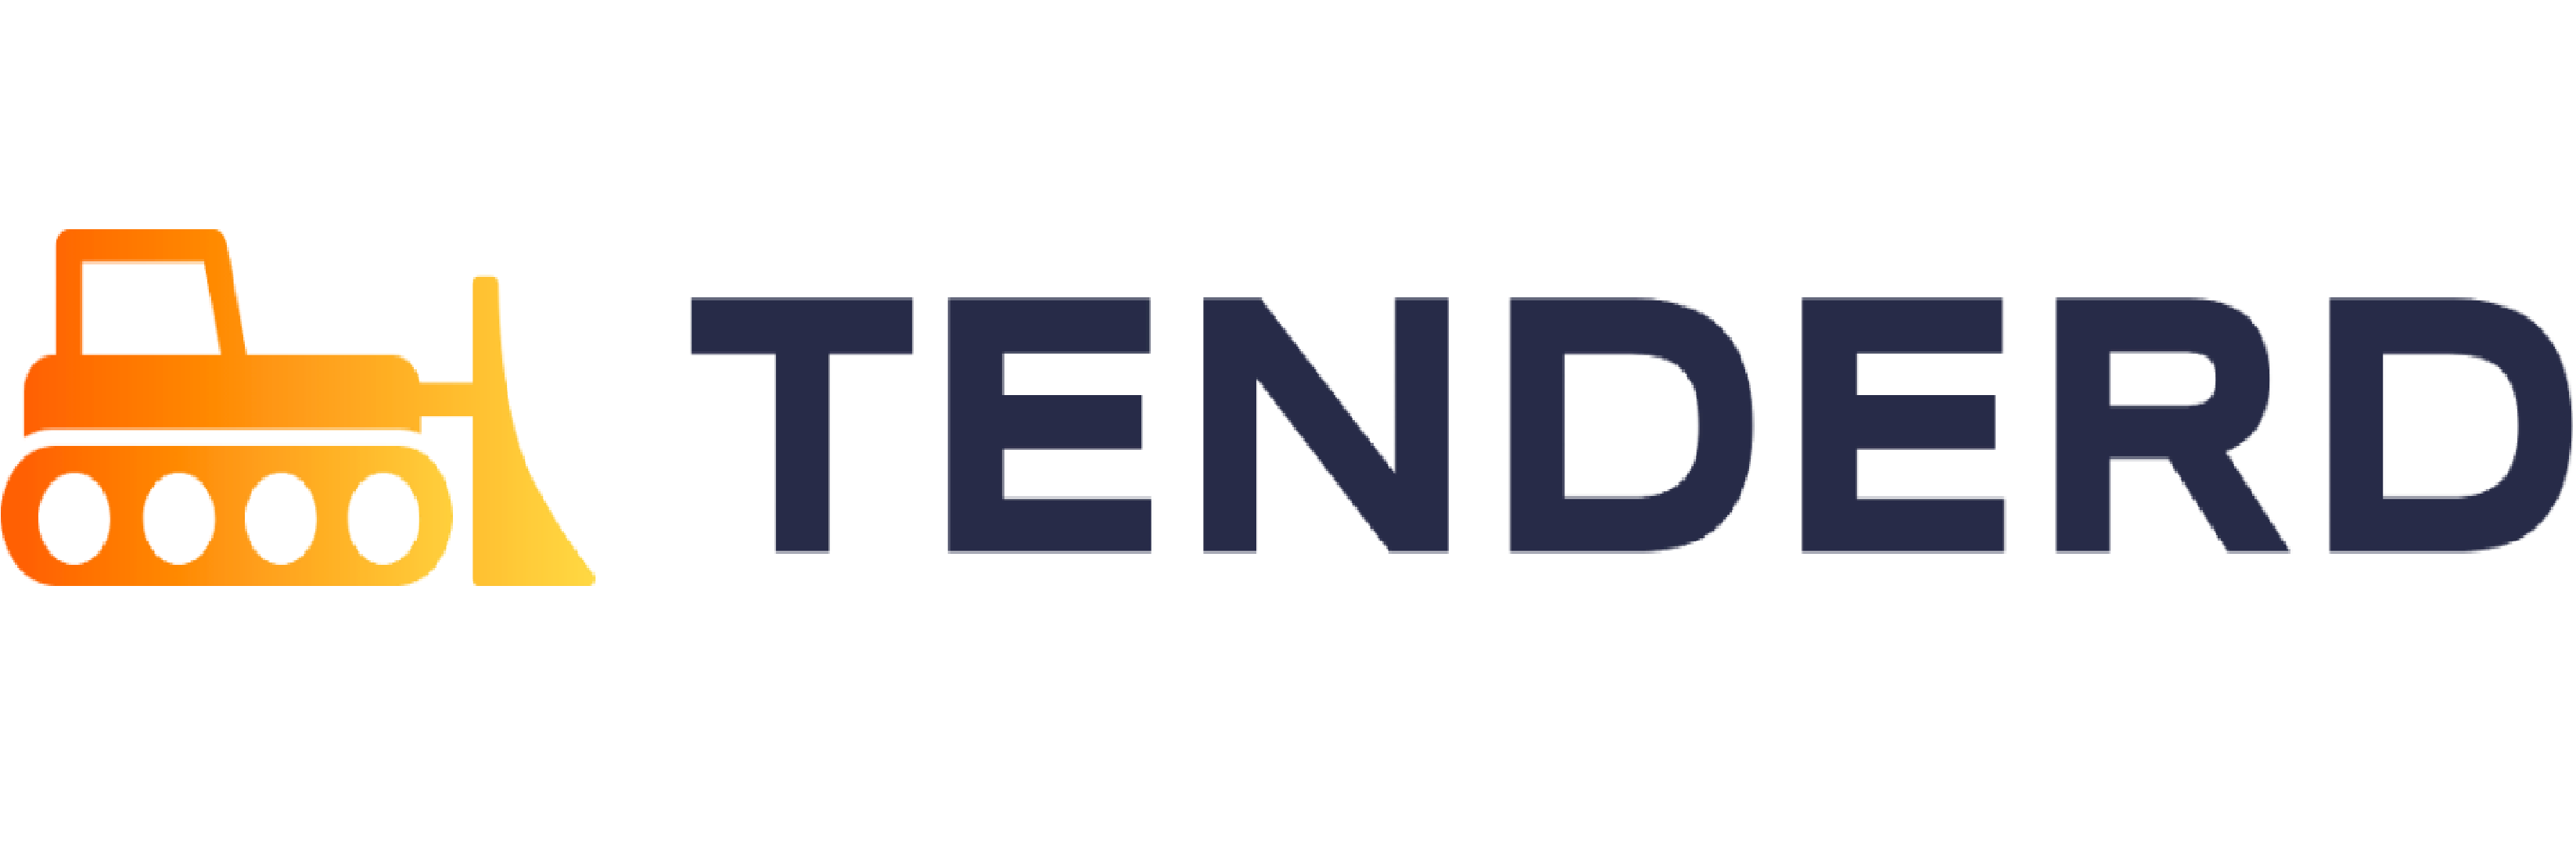 renderd logo